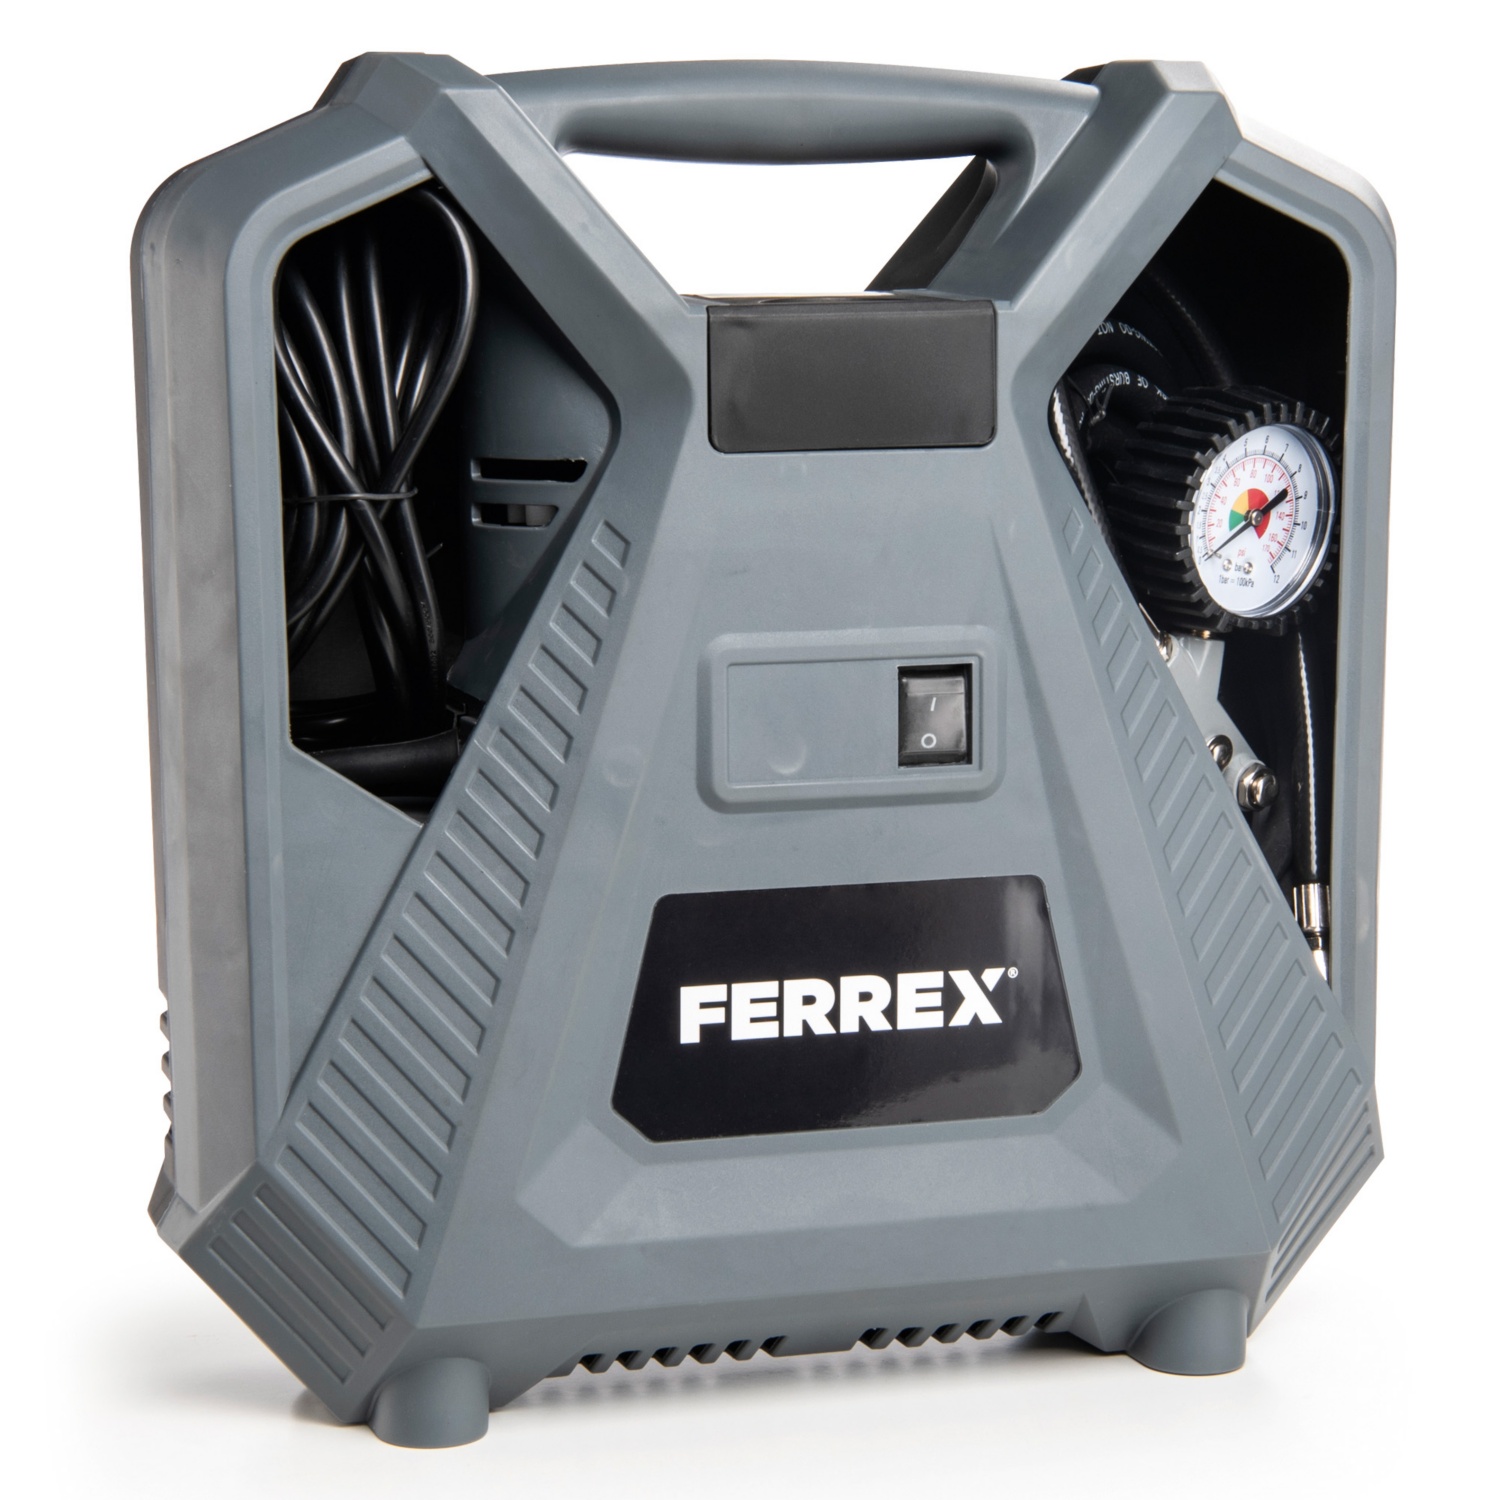 FERREX Compressore portatile